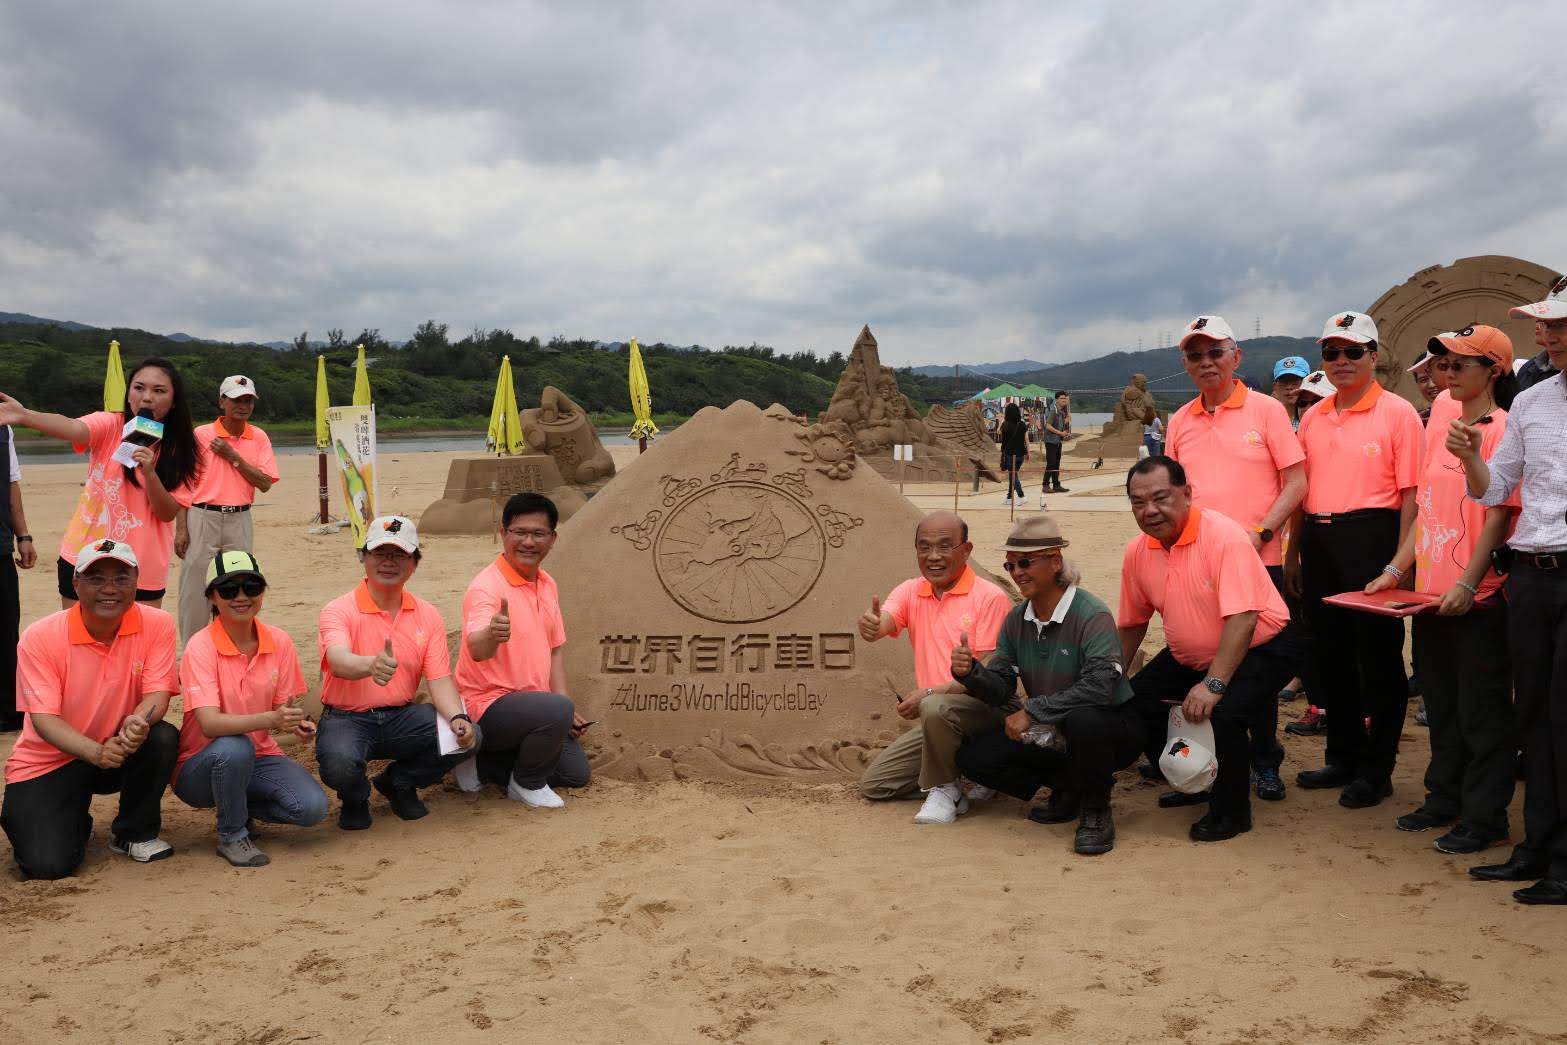 Watch the Fulong International Sand Sculpture Art Season